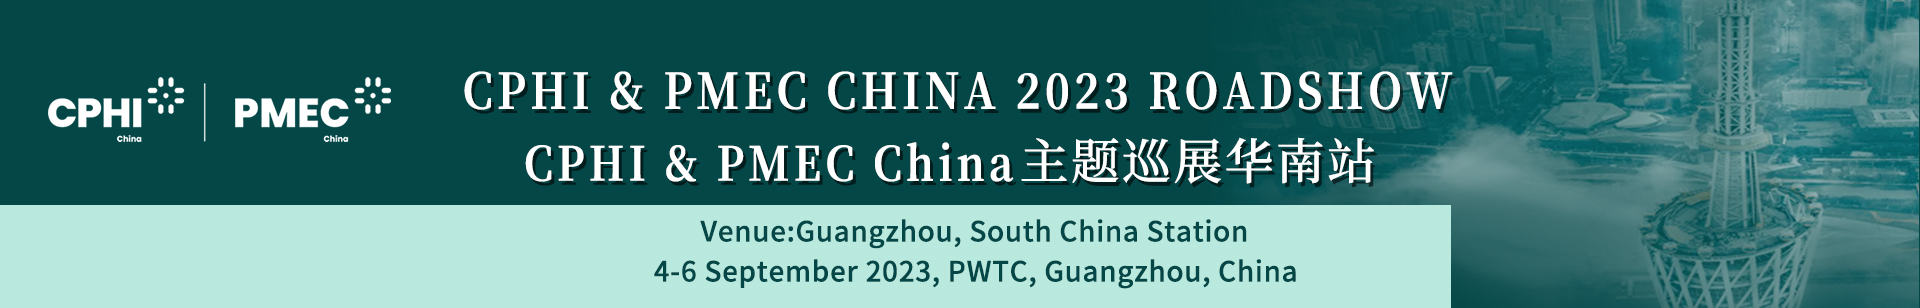 CPHI & PMEC CHINA 2023 ROADSHOW Guangzhou, South China Station